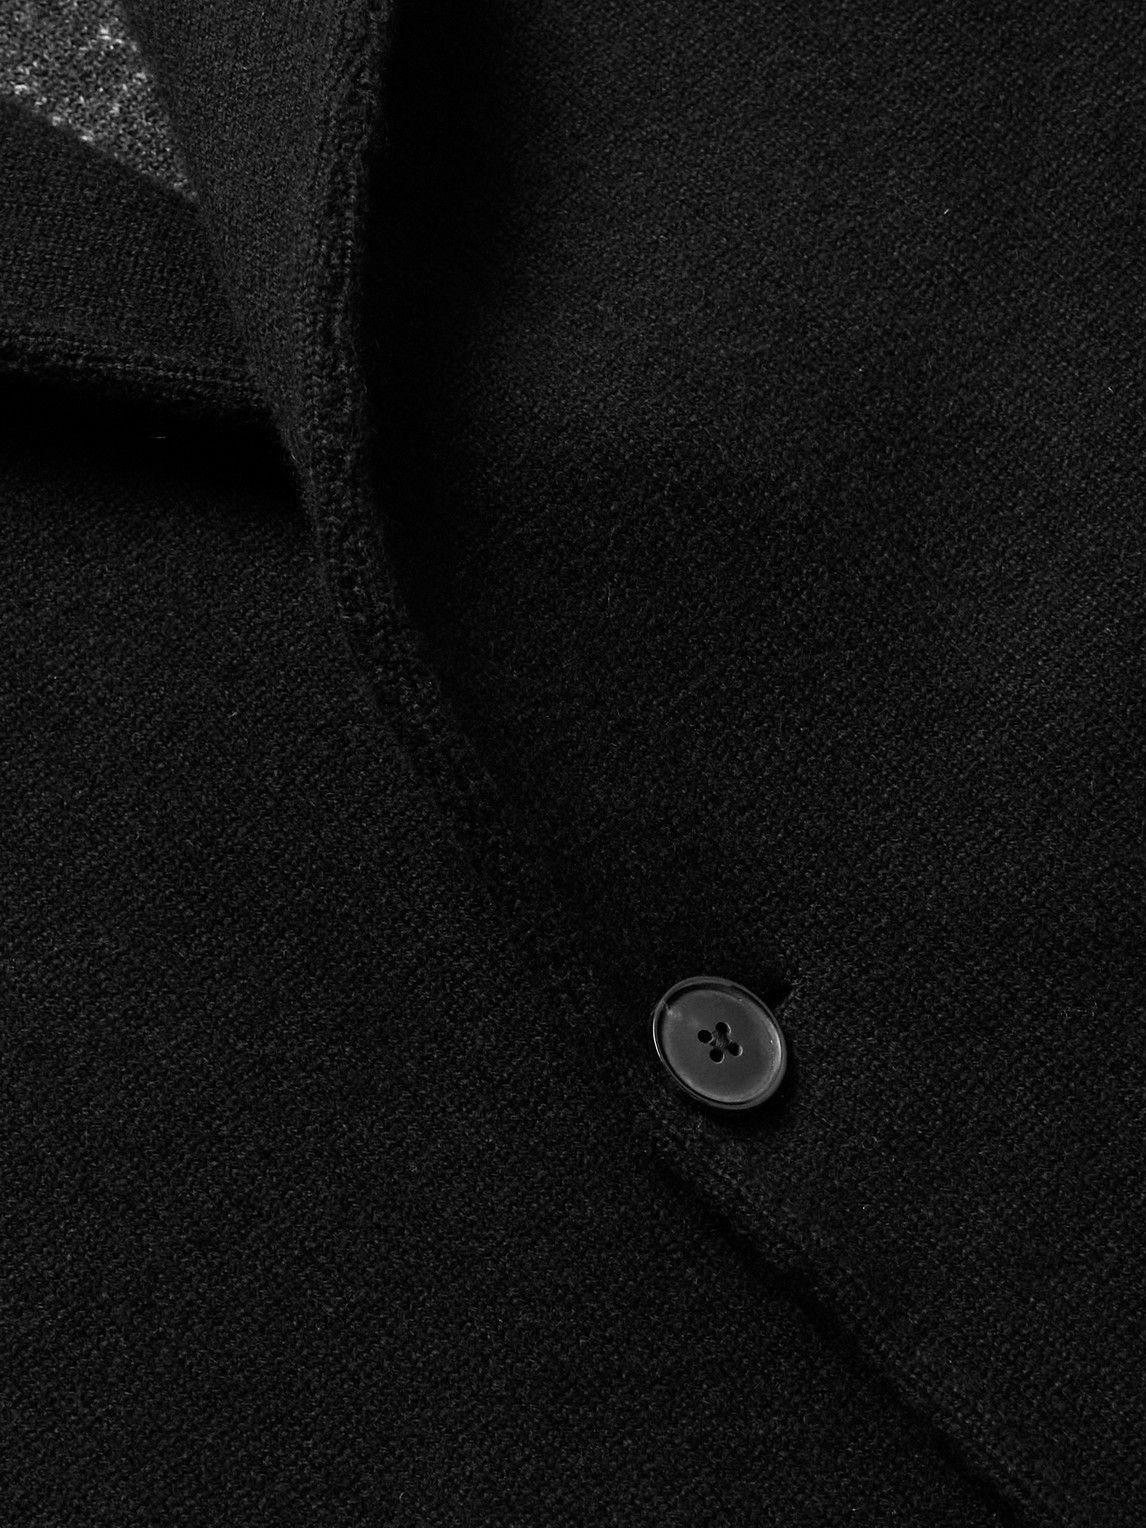 Zegna - Oasi Cashmere Coat - Black